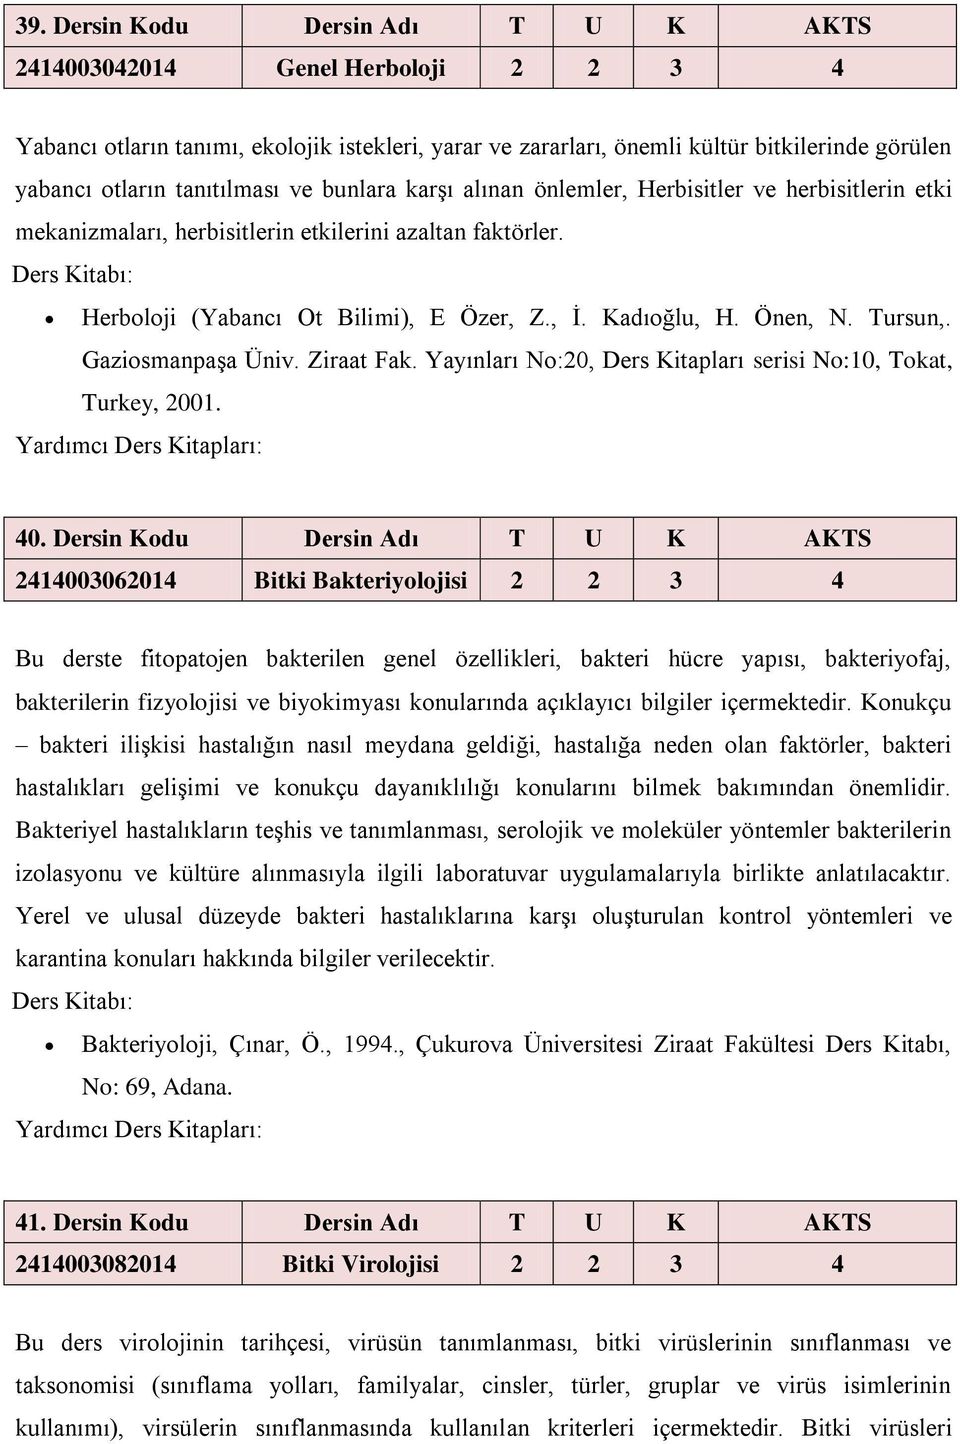 Önen, N. Tursun,. Gaziosmanpaşa Üniv. Ziraat Fak. Yayınları No:20, Ders Kitapları serisi No:10, Tokat, Turkey, 2001. 40.